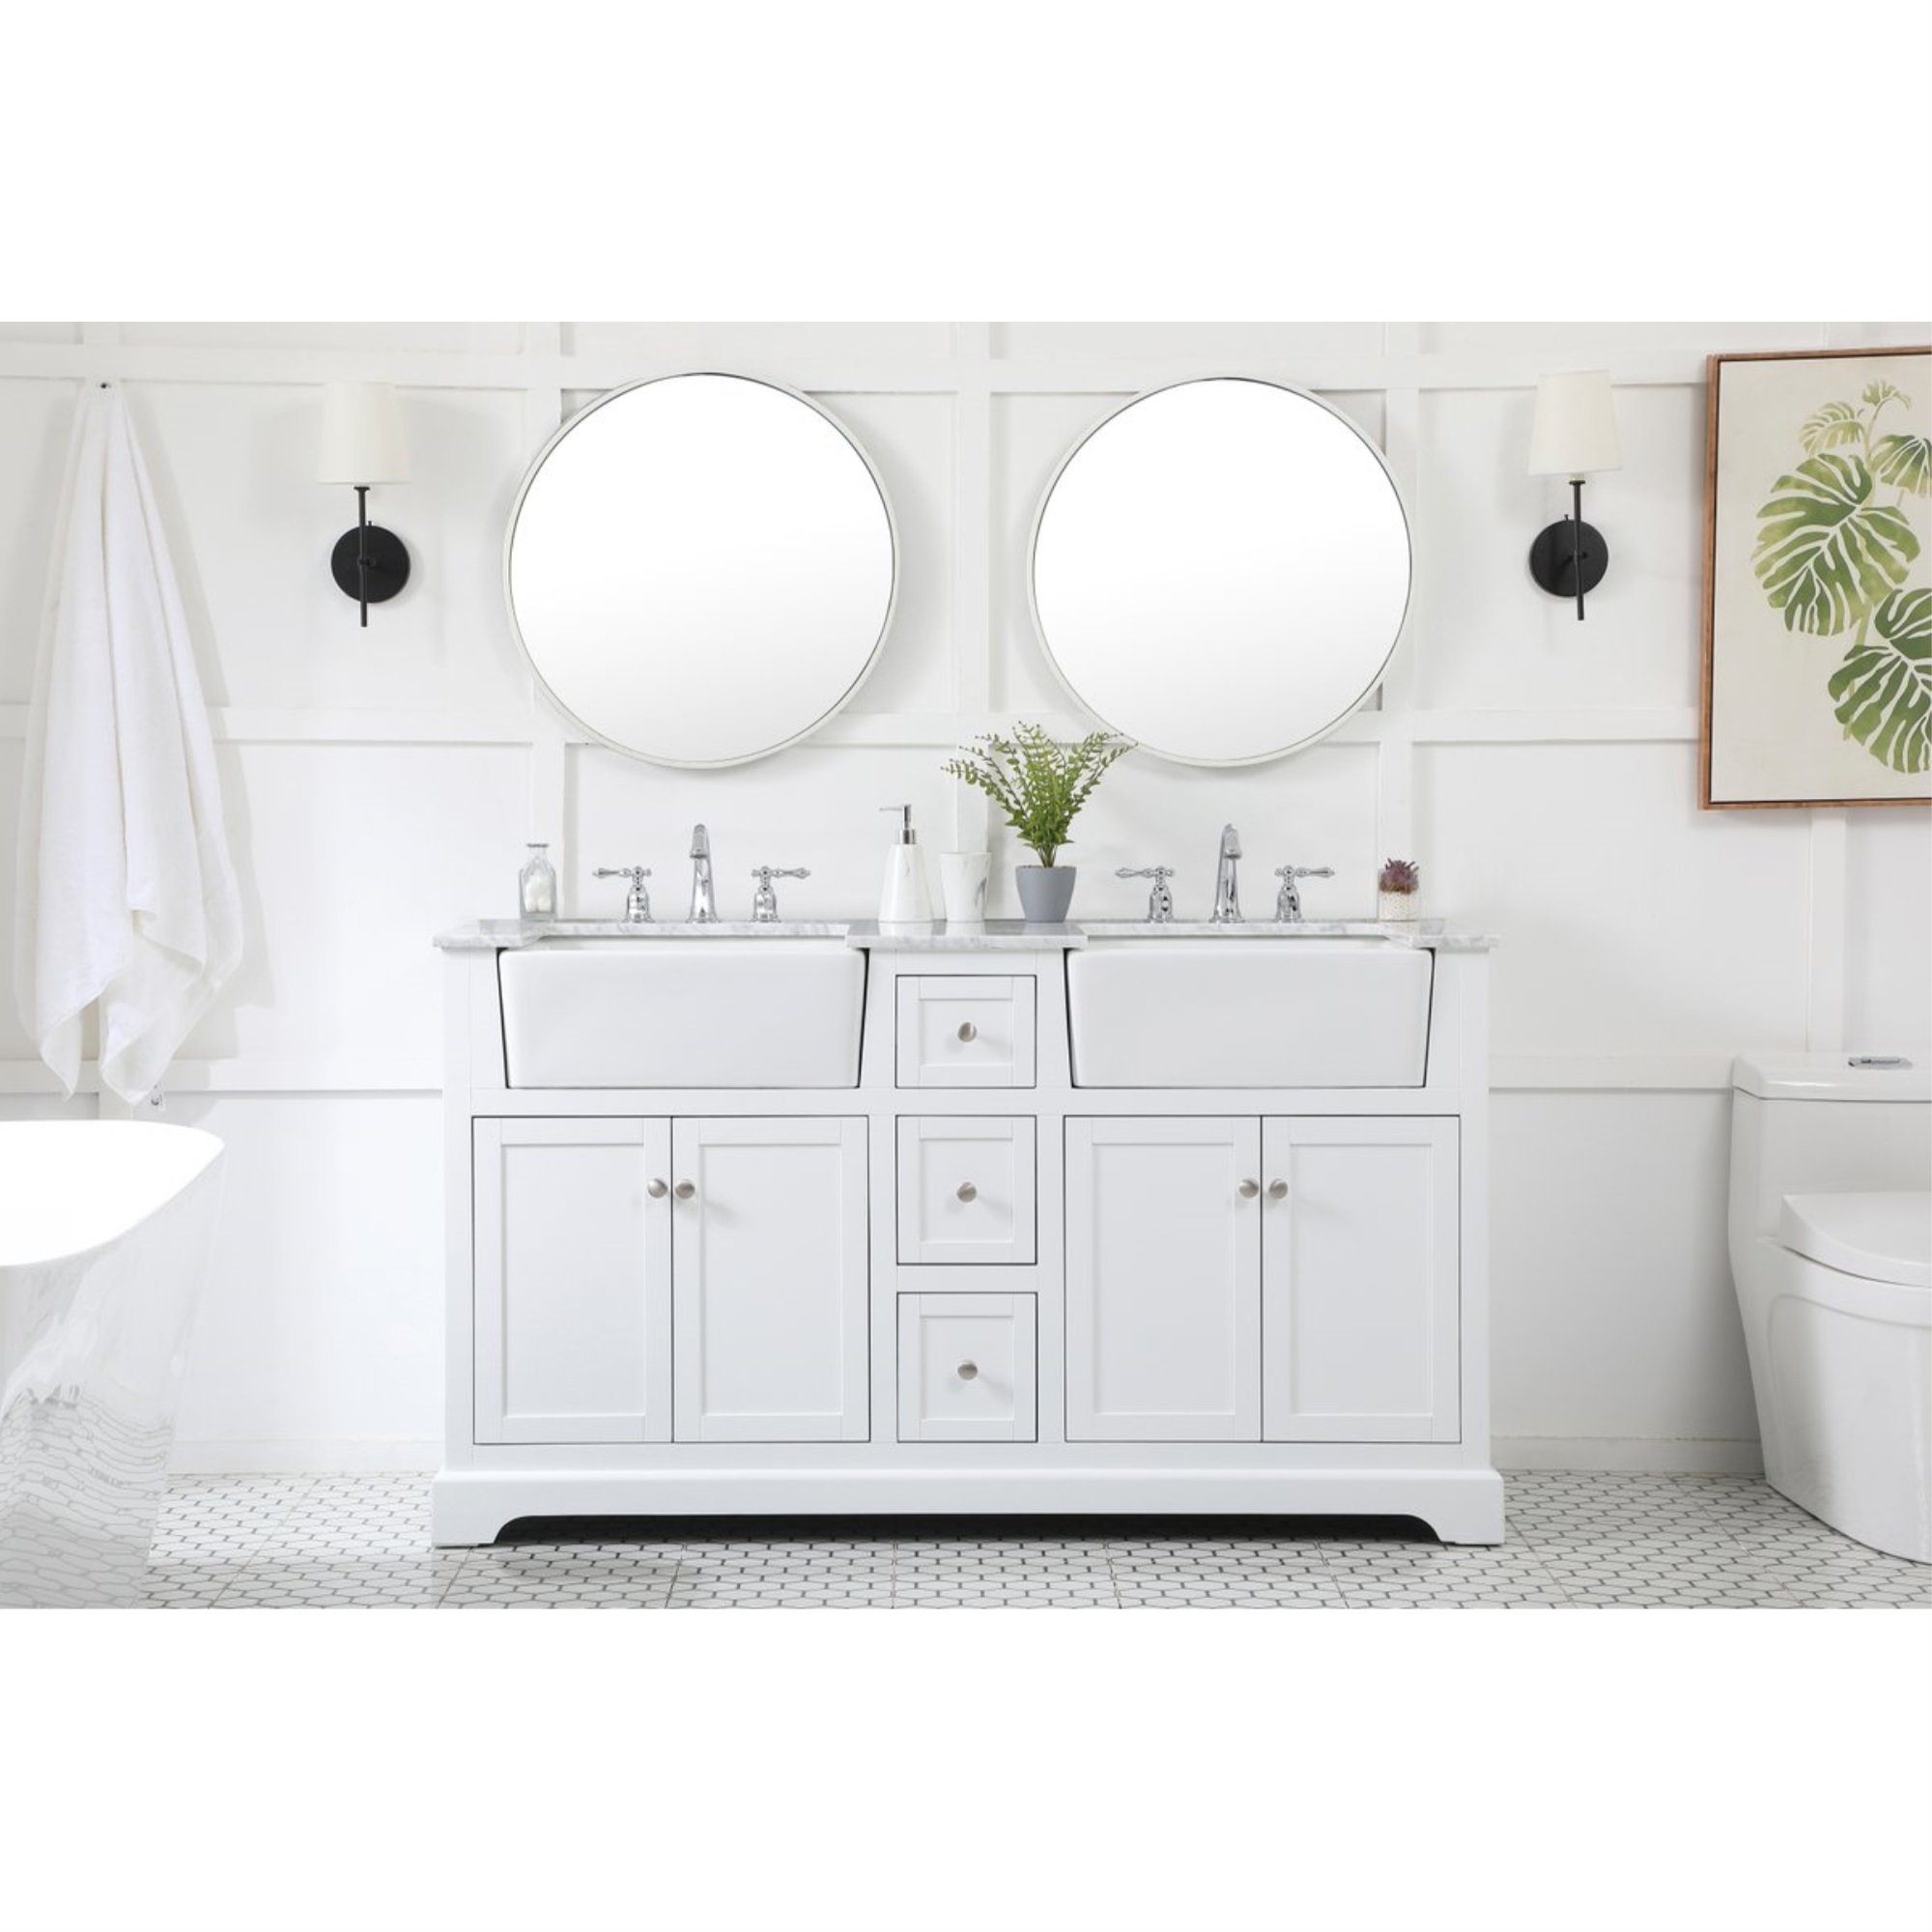 Elegant Decor 60 inch double bathroom vanity in white